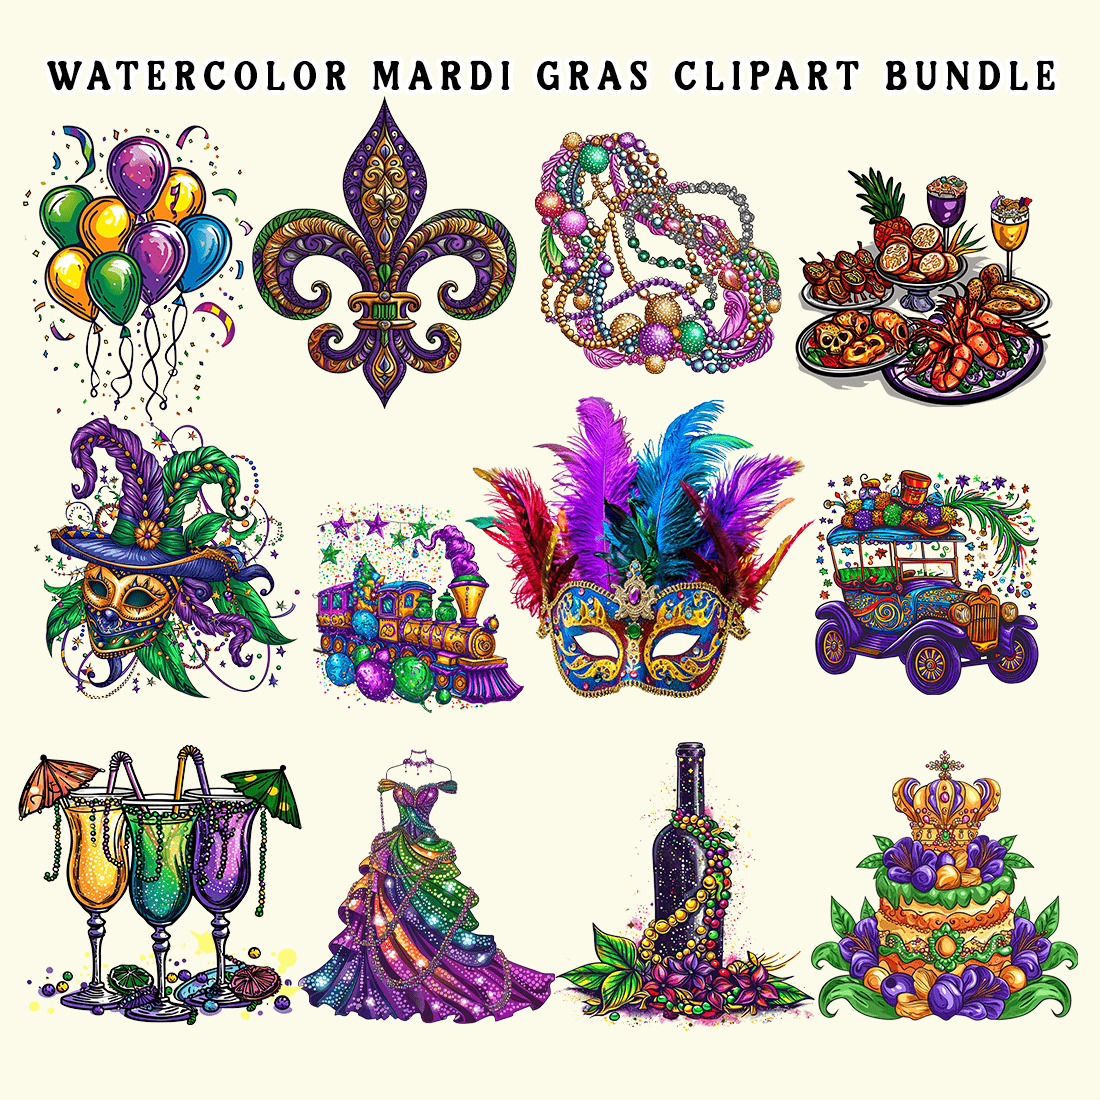 Watercolor Mardi Gras Clipart Bundle preview image.